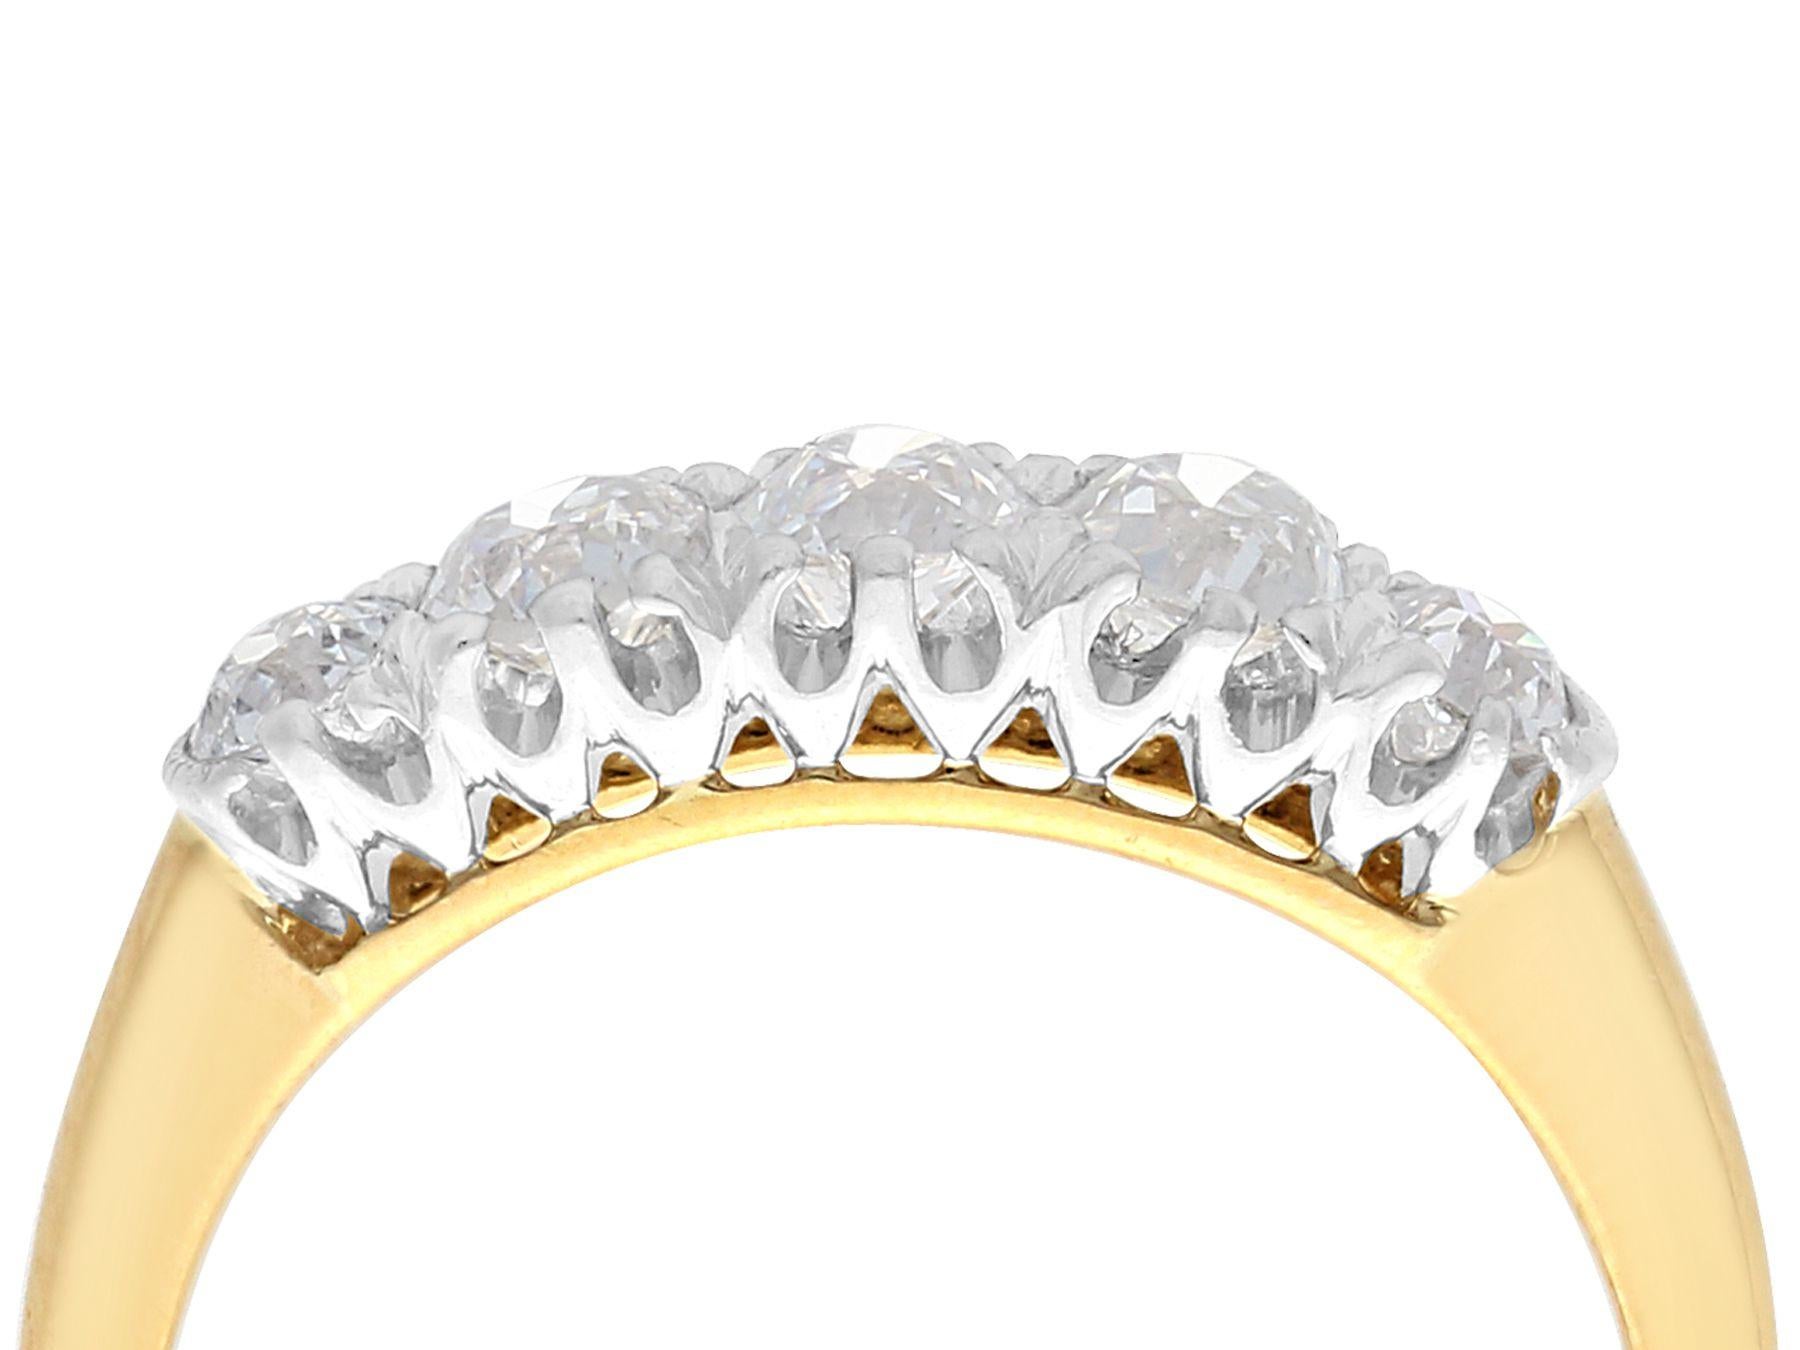 Ein beeindruckender Ring mit 0,90 Karat Diamanten und 18 Karat Gelbgold und fünf Steinen in Platin; Teil unserer vielfältigen Sammlungen von antikem Schmuck und Nachlassschmuck

Dieser feine und beeindruckende Diamantring ist aus 18 Karat Gelbgold